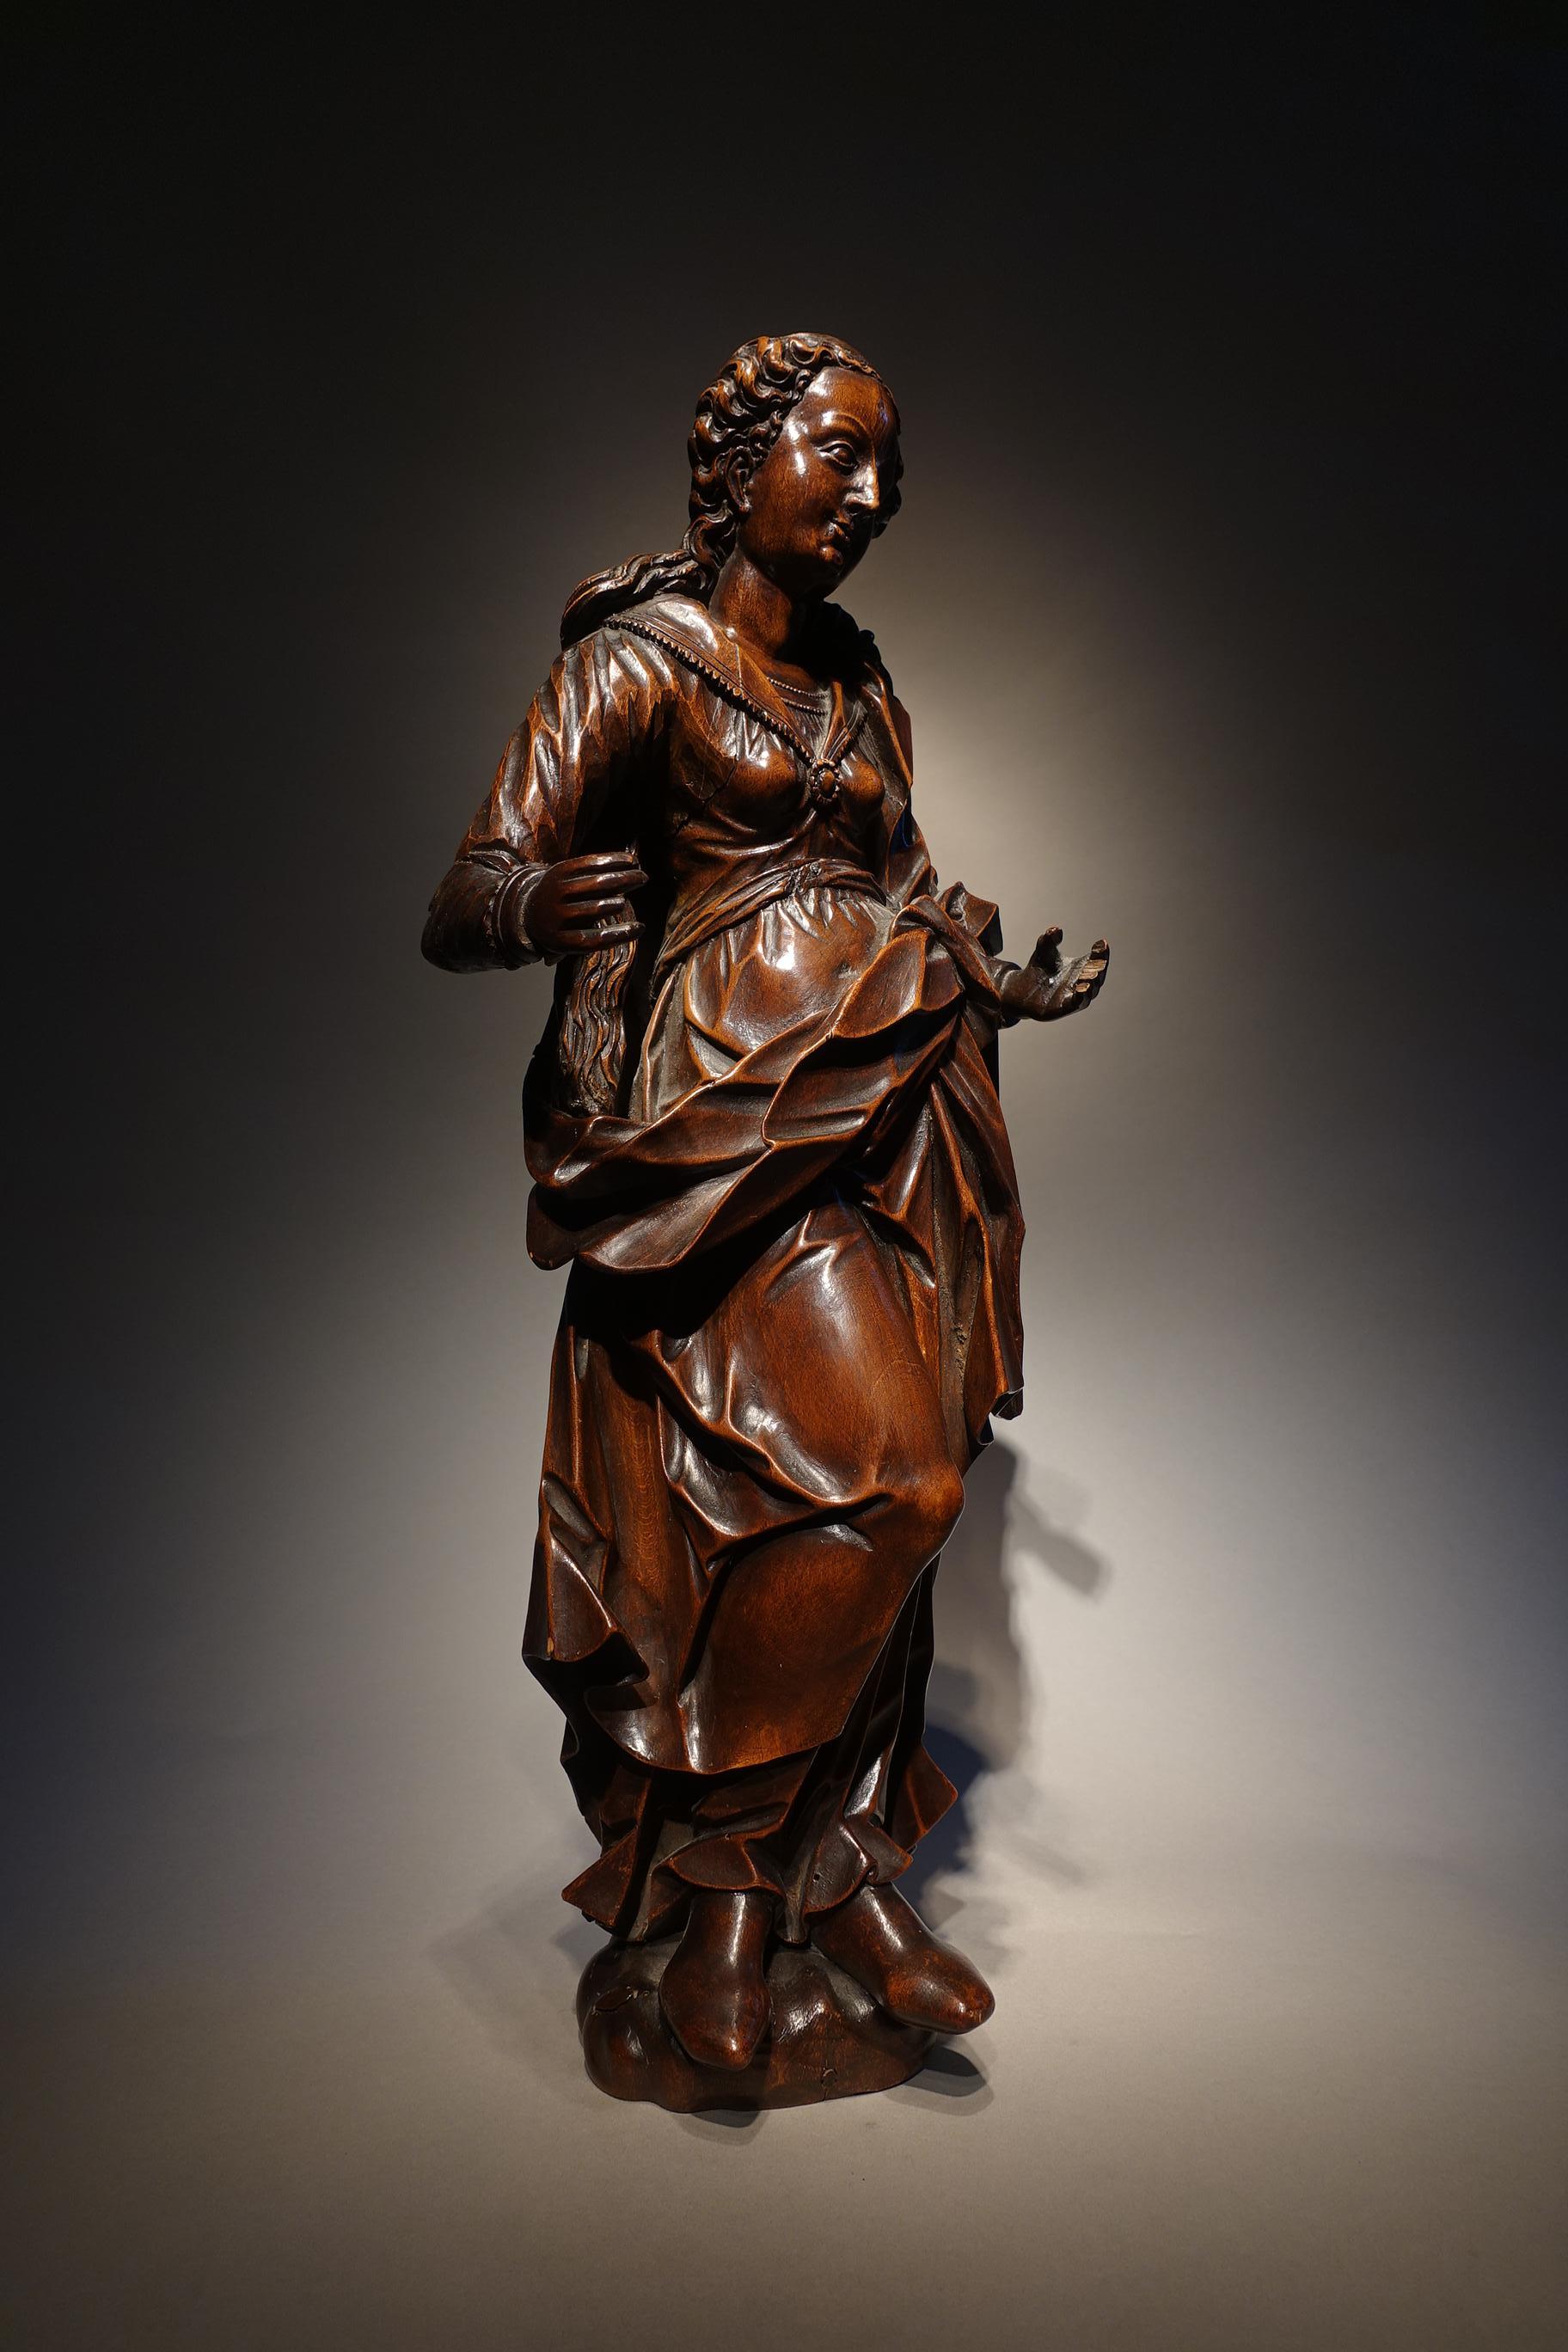 Statuette der Jungfrau Maria
Süddeutsch, um 1600
Holzskulptur
um 1600
(rechter Arm wiederhergestellt)
52 cm